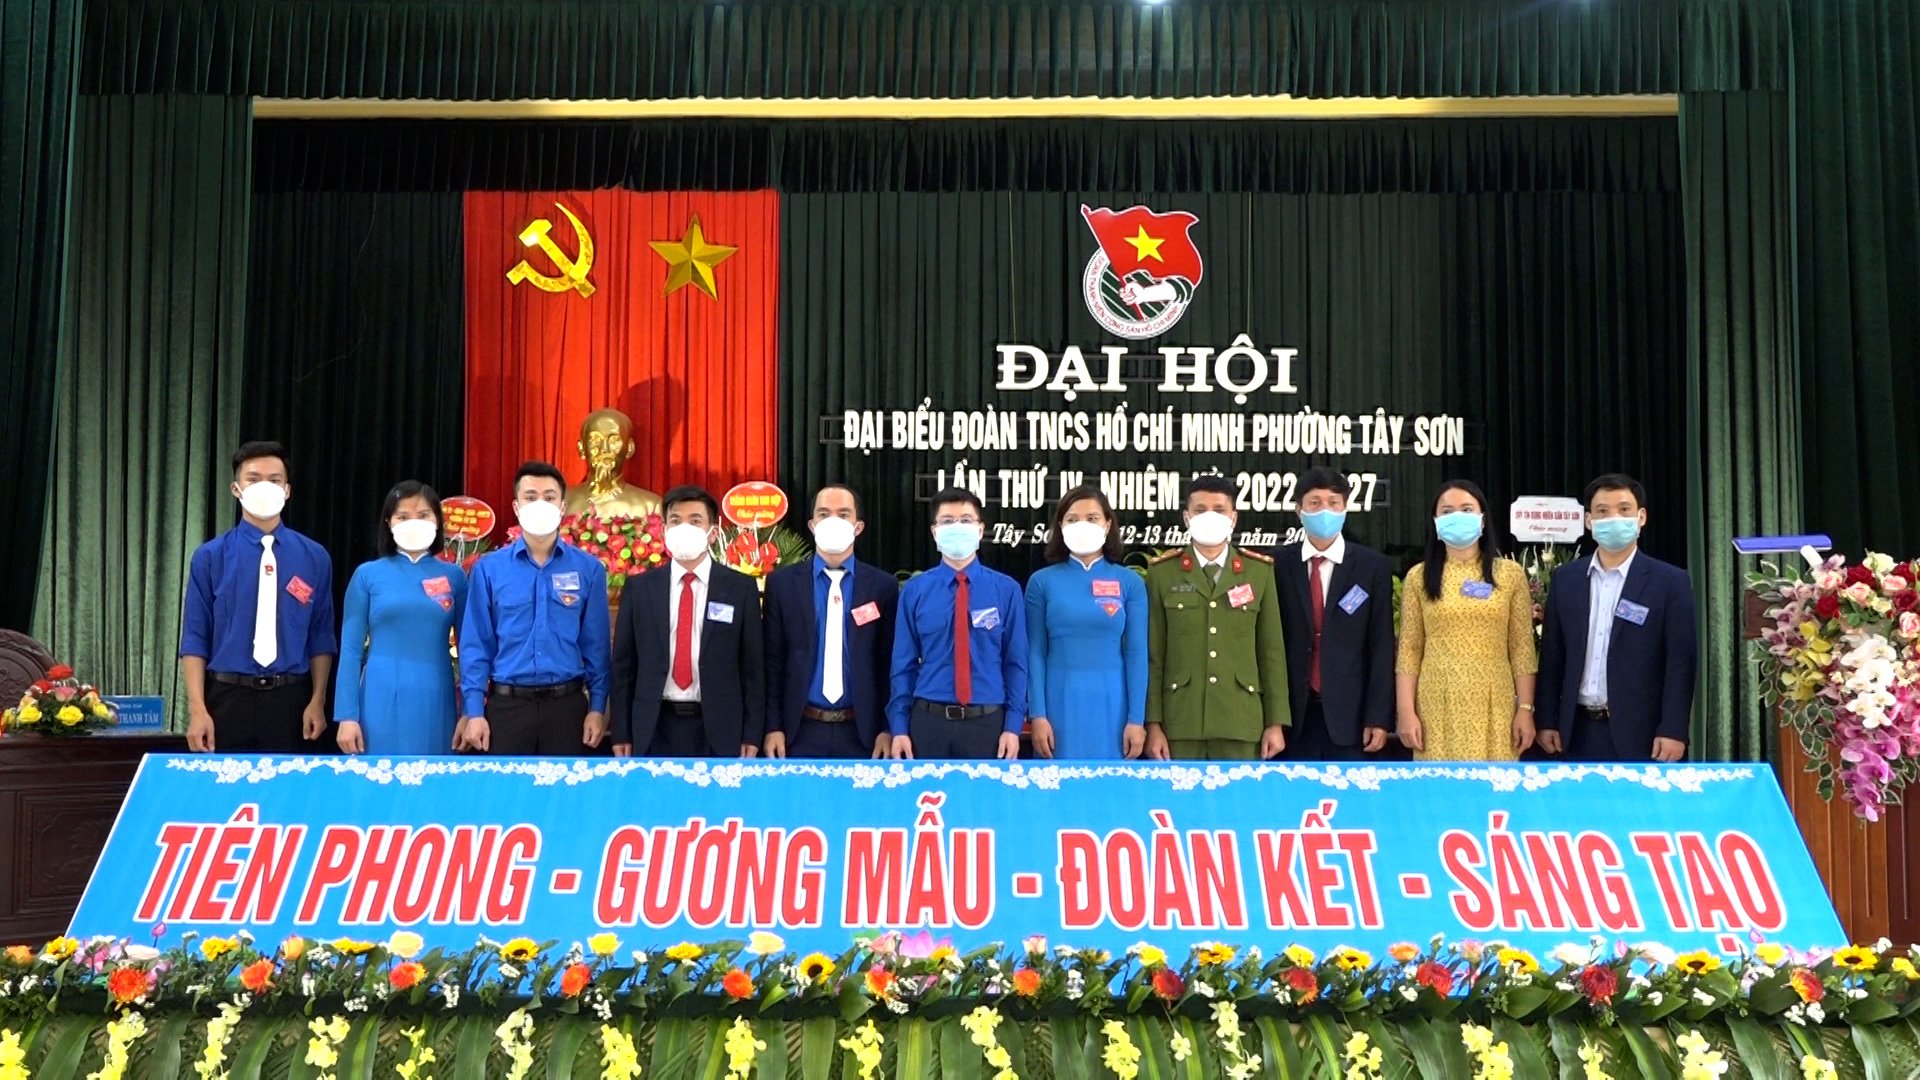 Đại hội đại biểu Đoàn TNCS  Hồ Chí Minh phường Tây Sơn lần thứ IV nhiệm kỳ 2022-2027